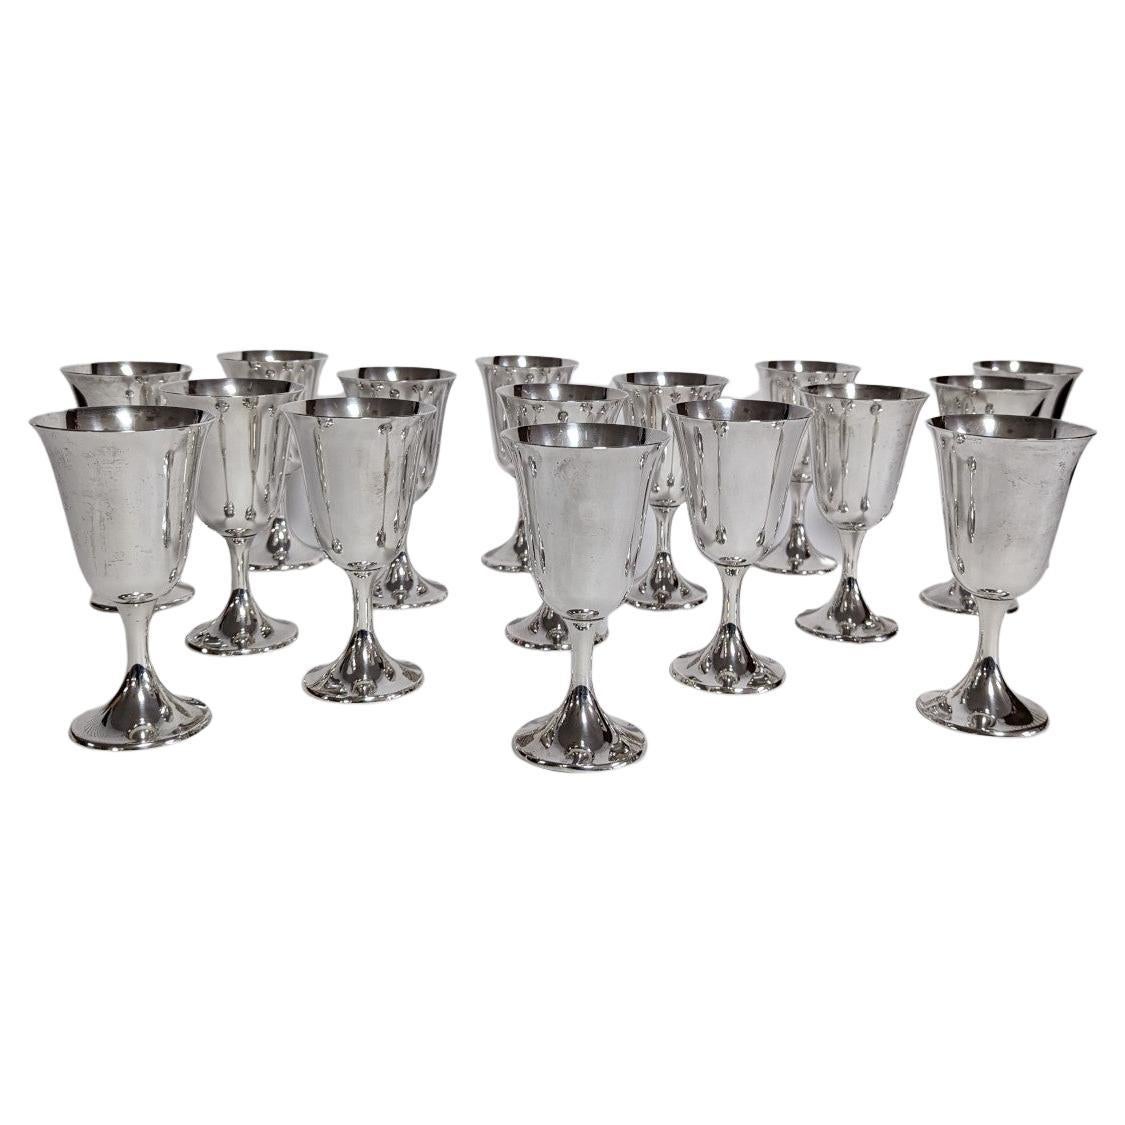 Set of 16 Sterling Silver Gorham Water Goblets